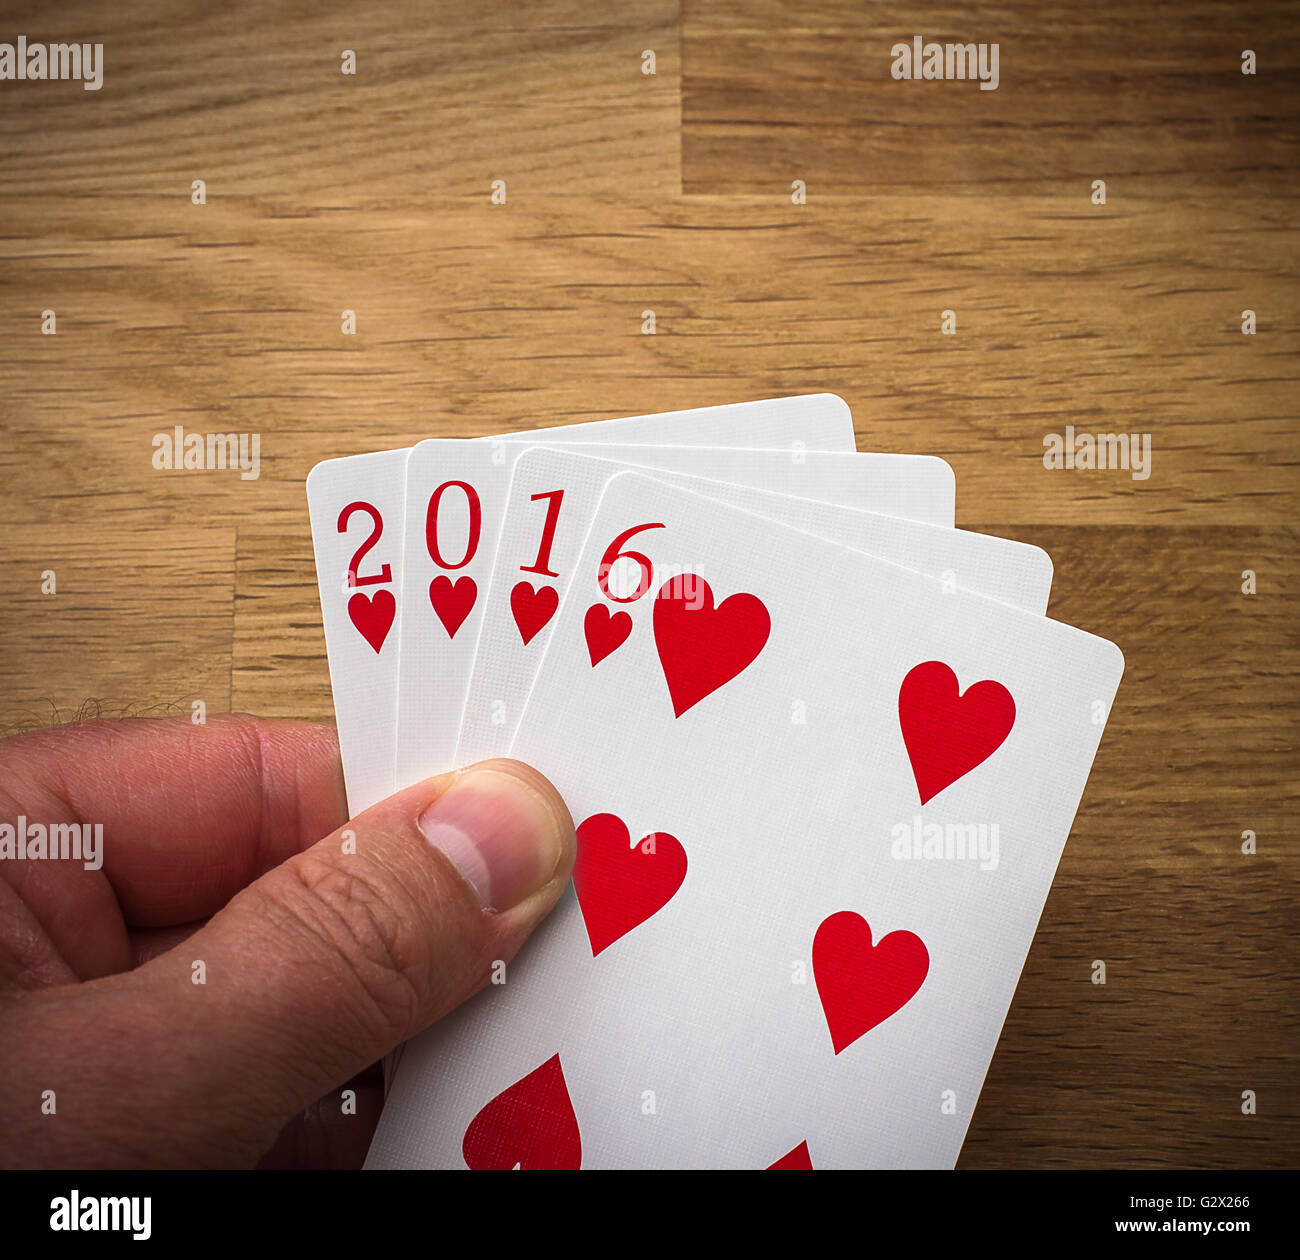 Spielkarte 2016 mit Herz auf Holz Hintergrund Stockfoto